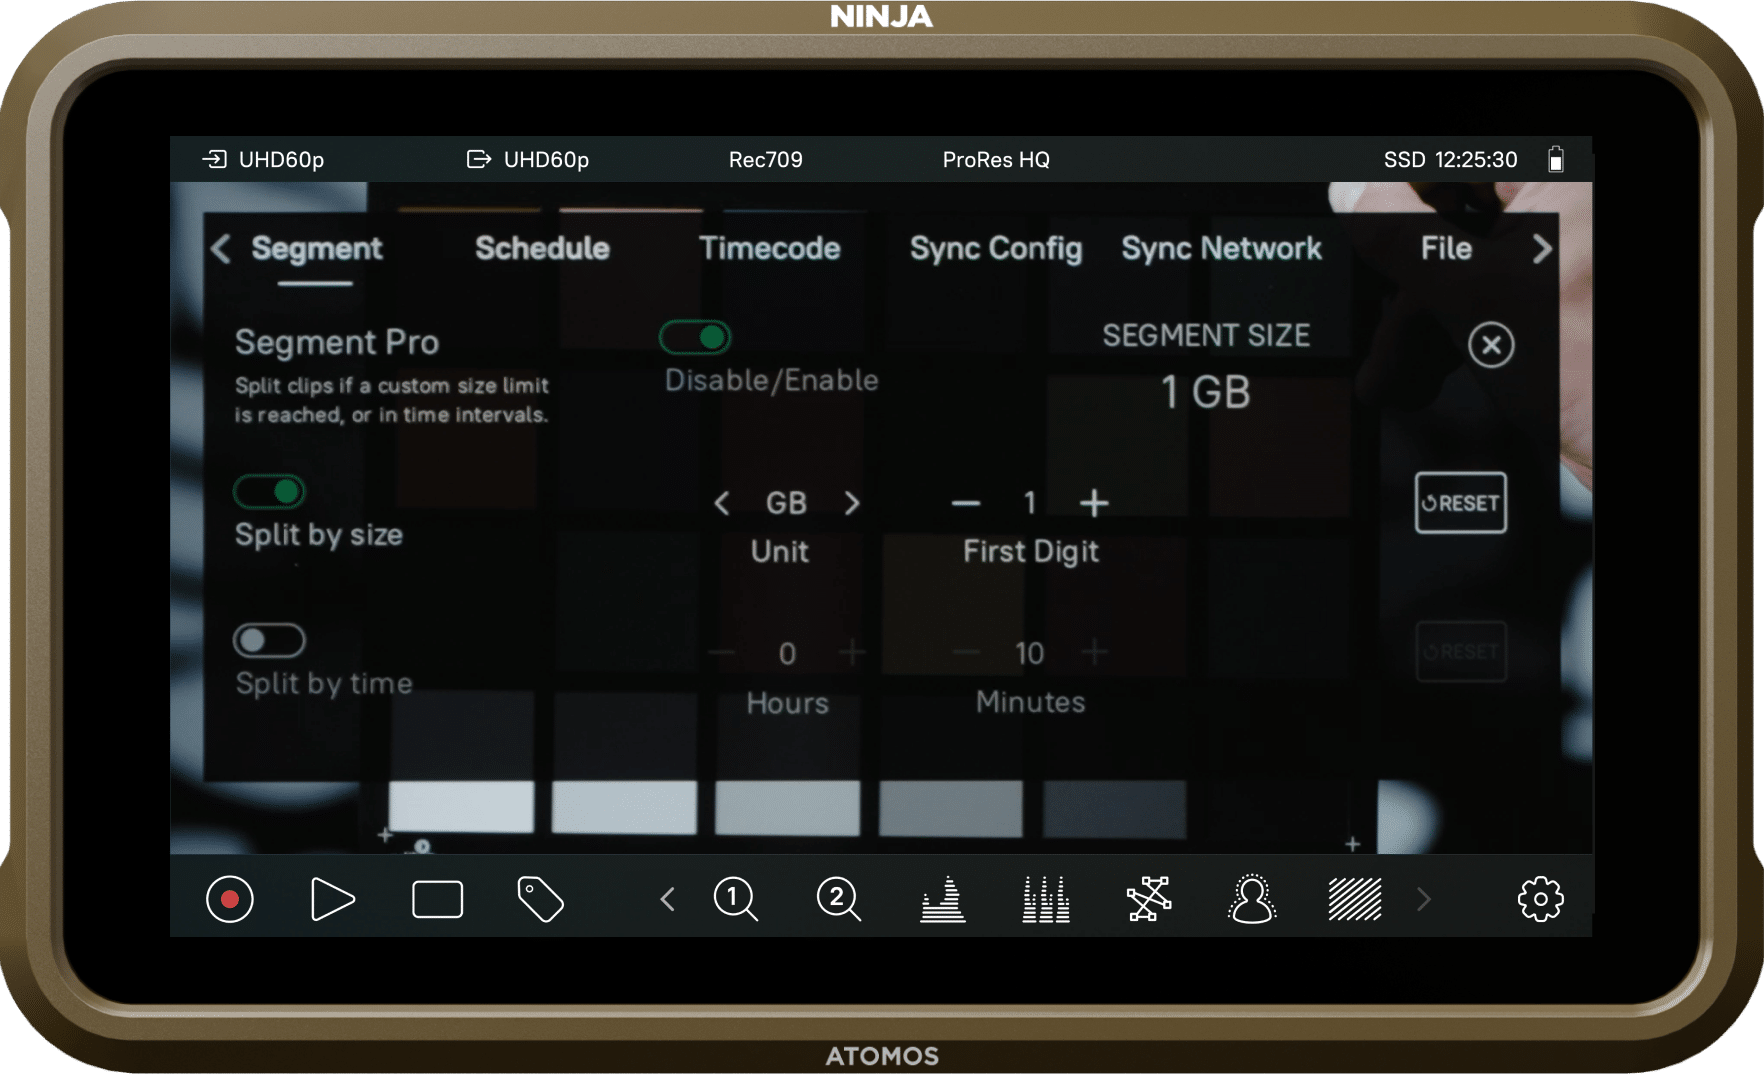 El ATOMOS Ninja V/V+ ahora incluye la licencia completa de ASSIMILATE Play  Pro – Oferta por tiempo limitado